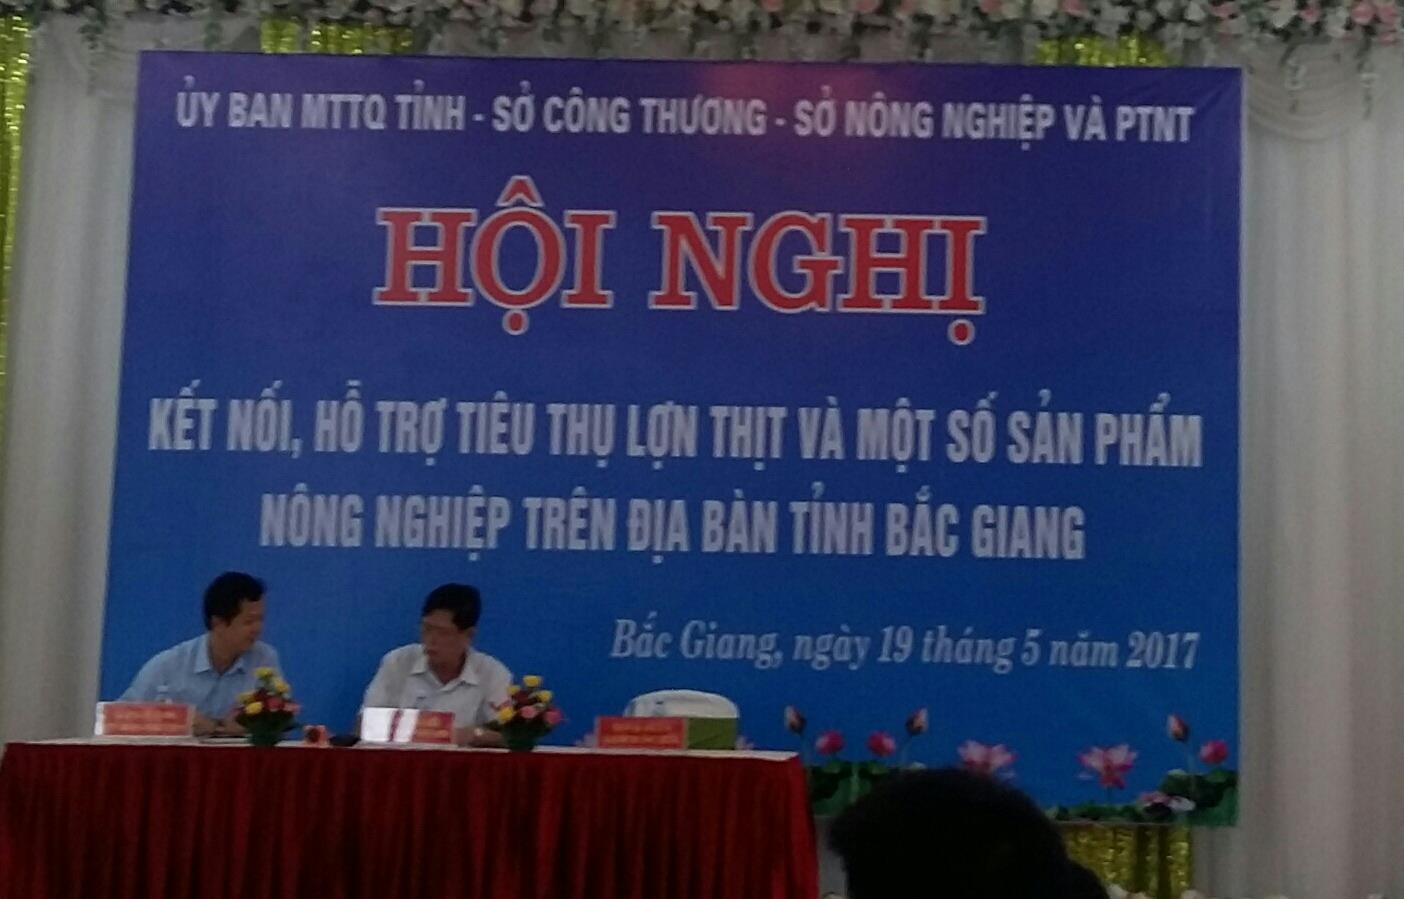 Hội nghị kết nối, hỗ trợ tiêu thụ lợn thịt và một số sản phẩm nông nghiệp trên địa bàn tỉnh Bắc Giang